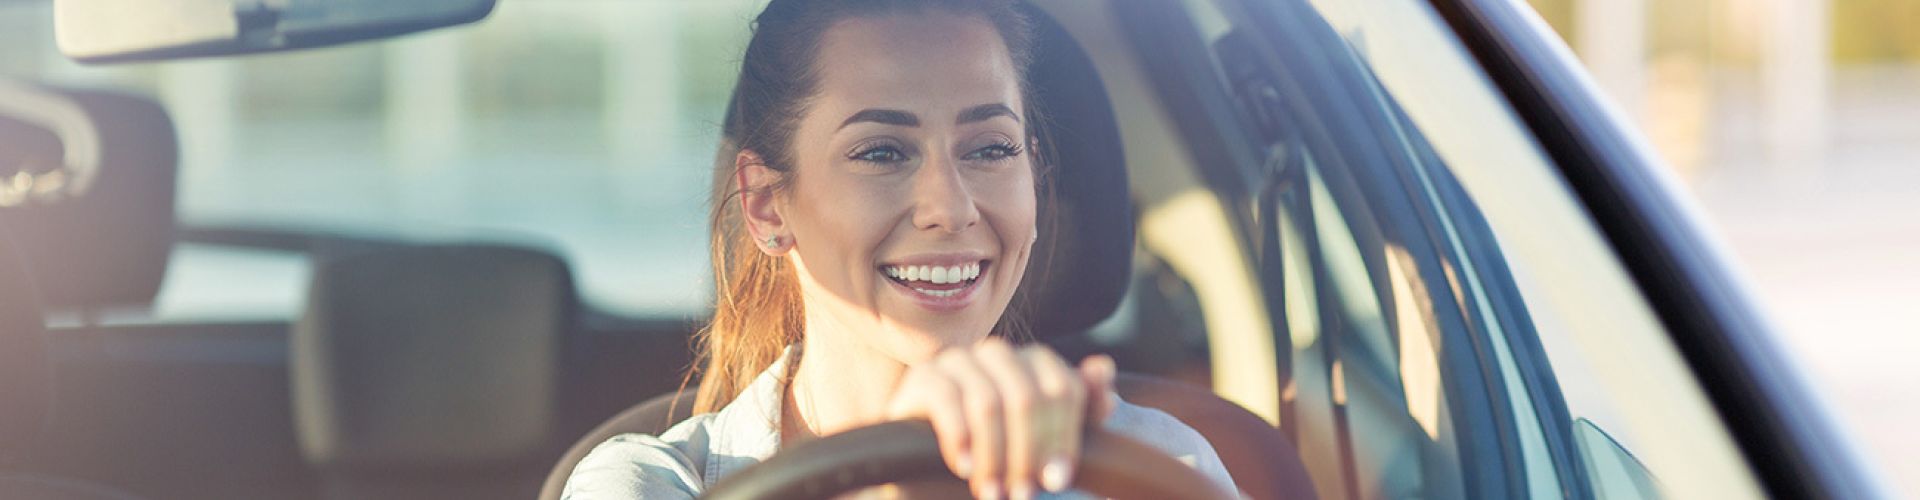 Fröhliche Frau mit Lächeln am Steuer eines Autos